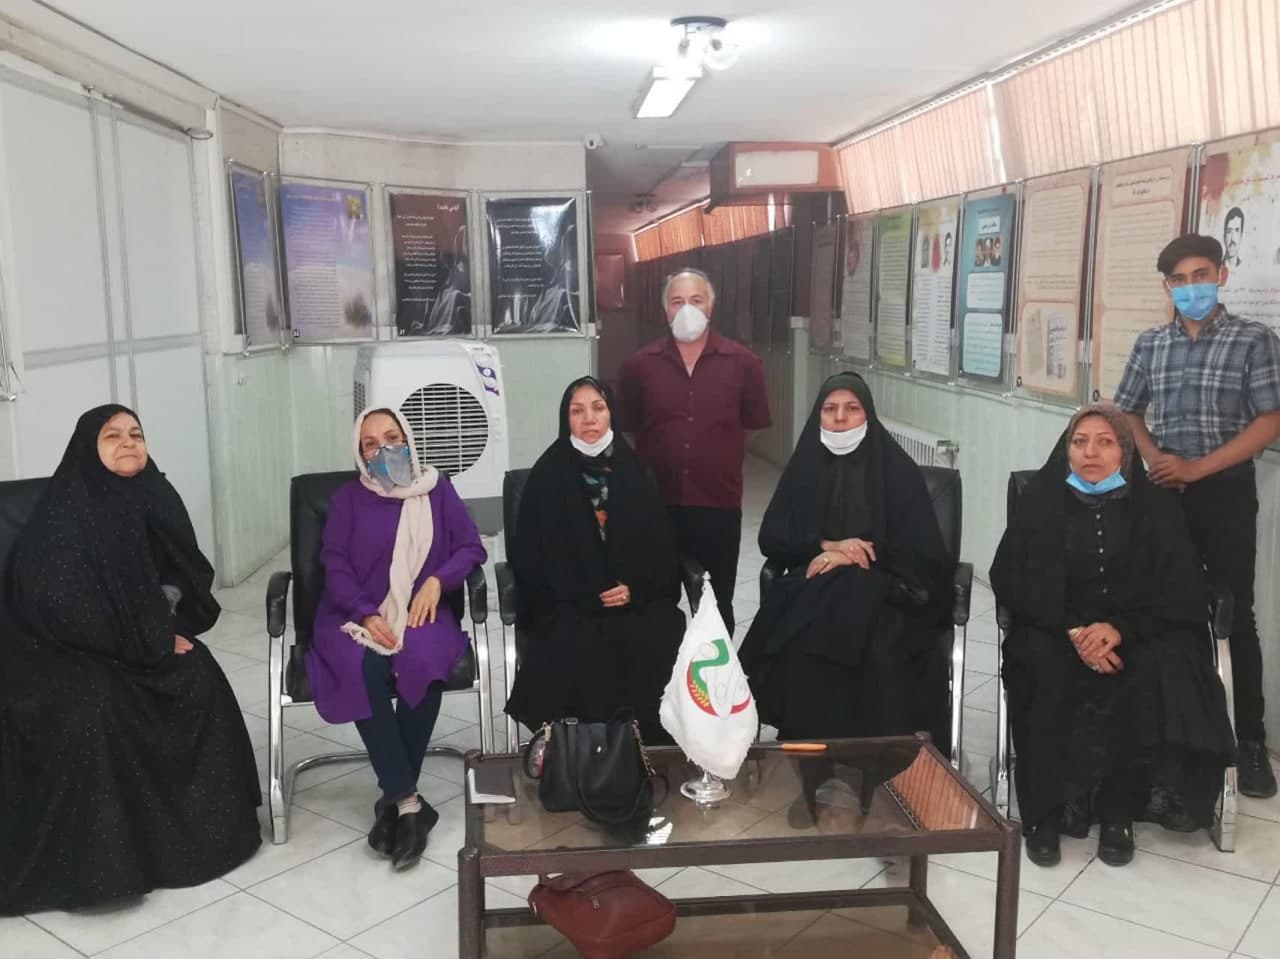 وضعیت اعضای فرقه رجوی در آلبانی را پیگیری نمایید / این افراد تحت فشارهای روانی قرار دارند